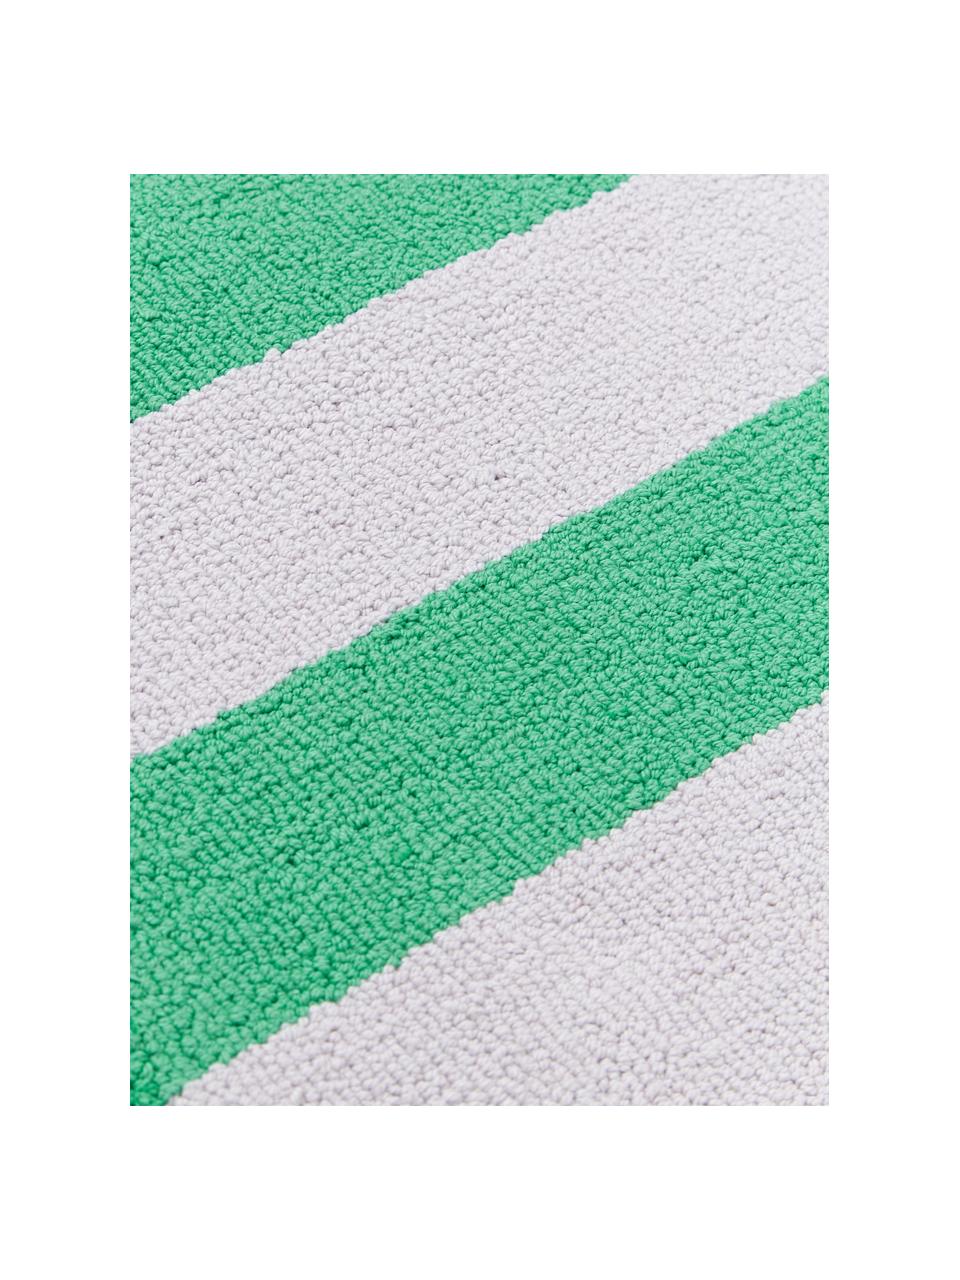 Handgetuftete Tischsets Kio Stripe, 4 Stück, 100 % Baumwolle, Grün, Weiss, B 35 x L 45 cm